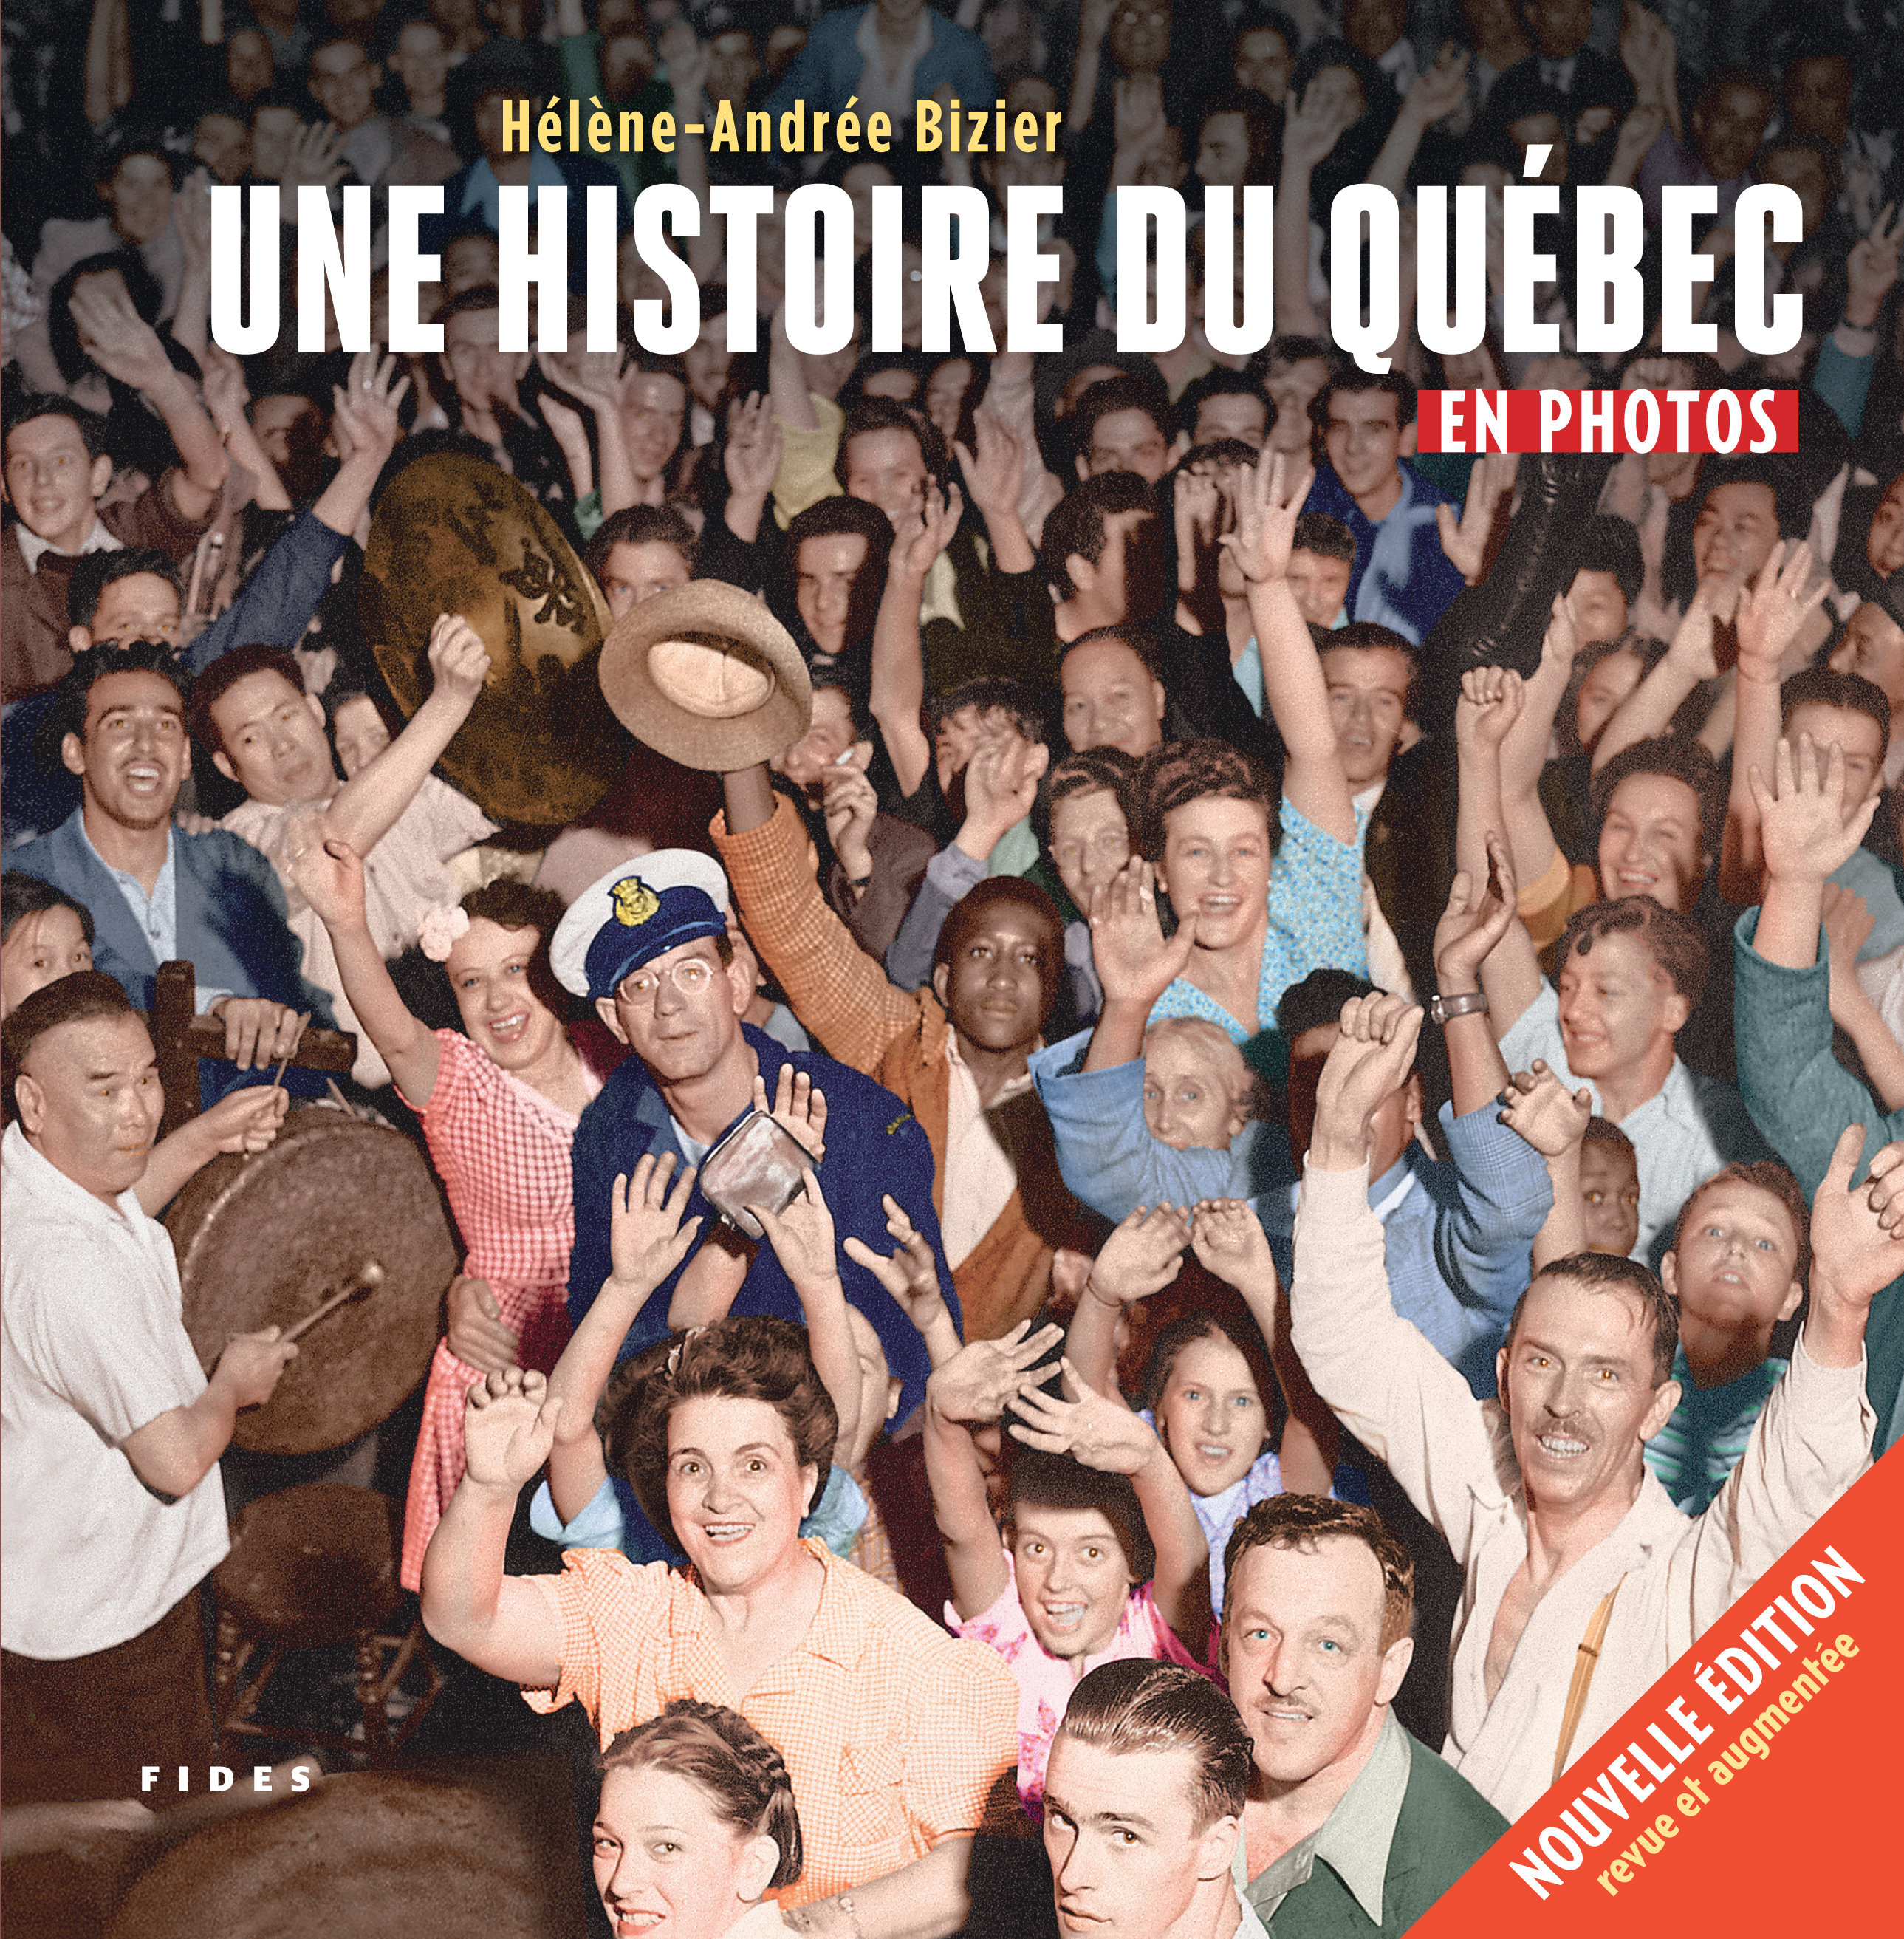 alt="Histoire-Quebec-Bizier"